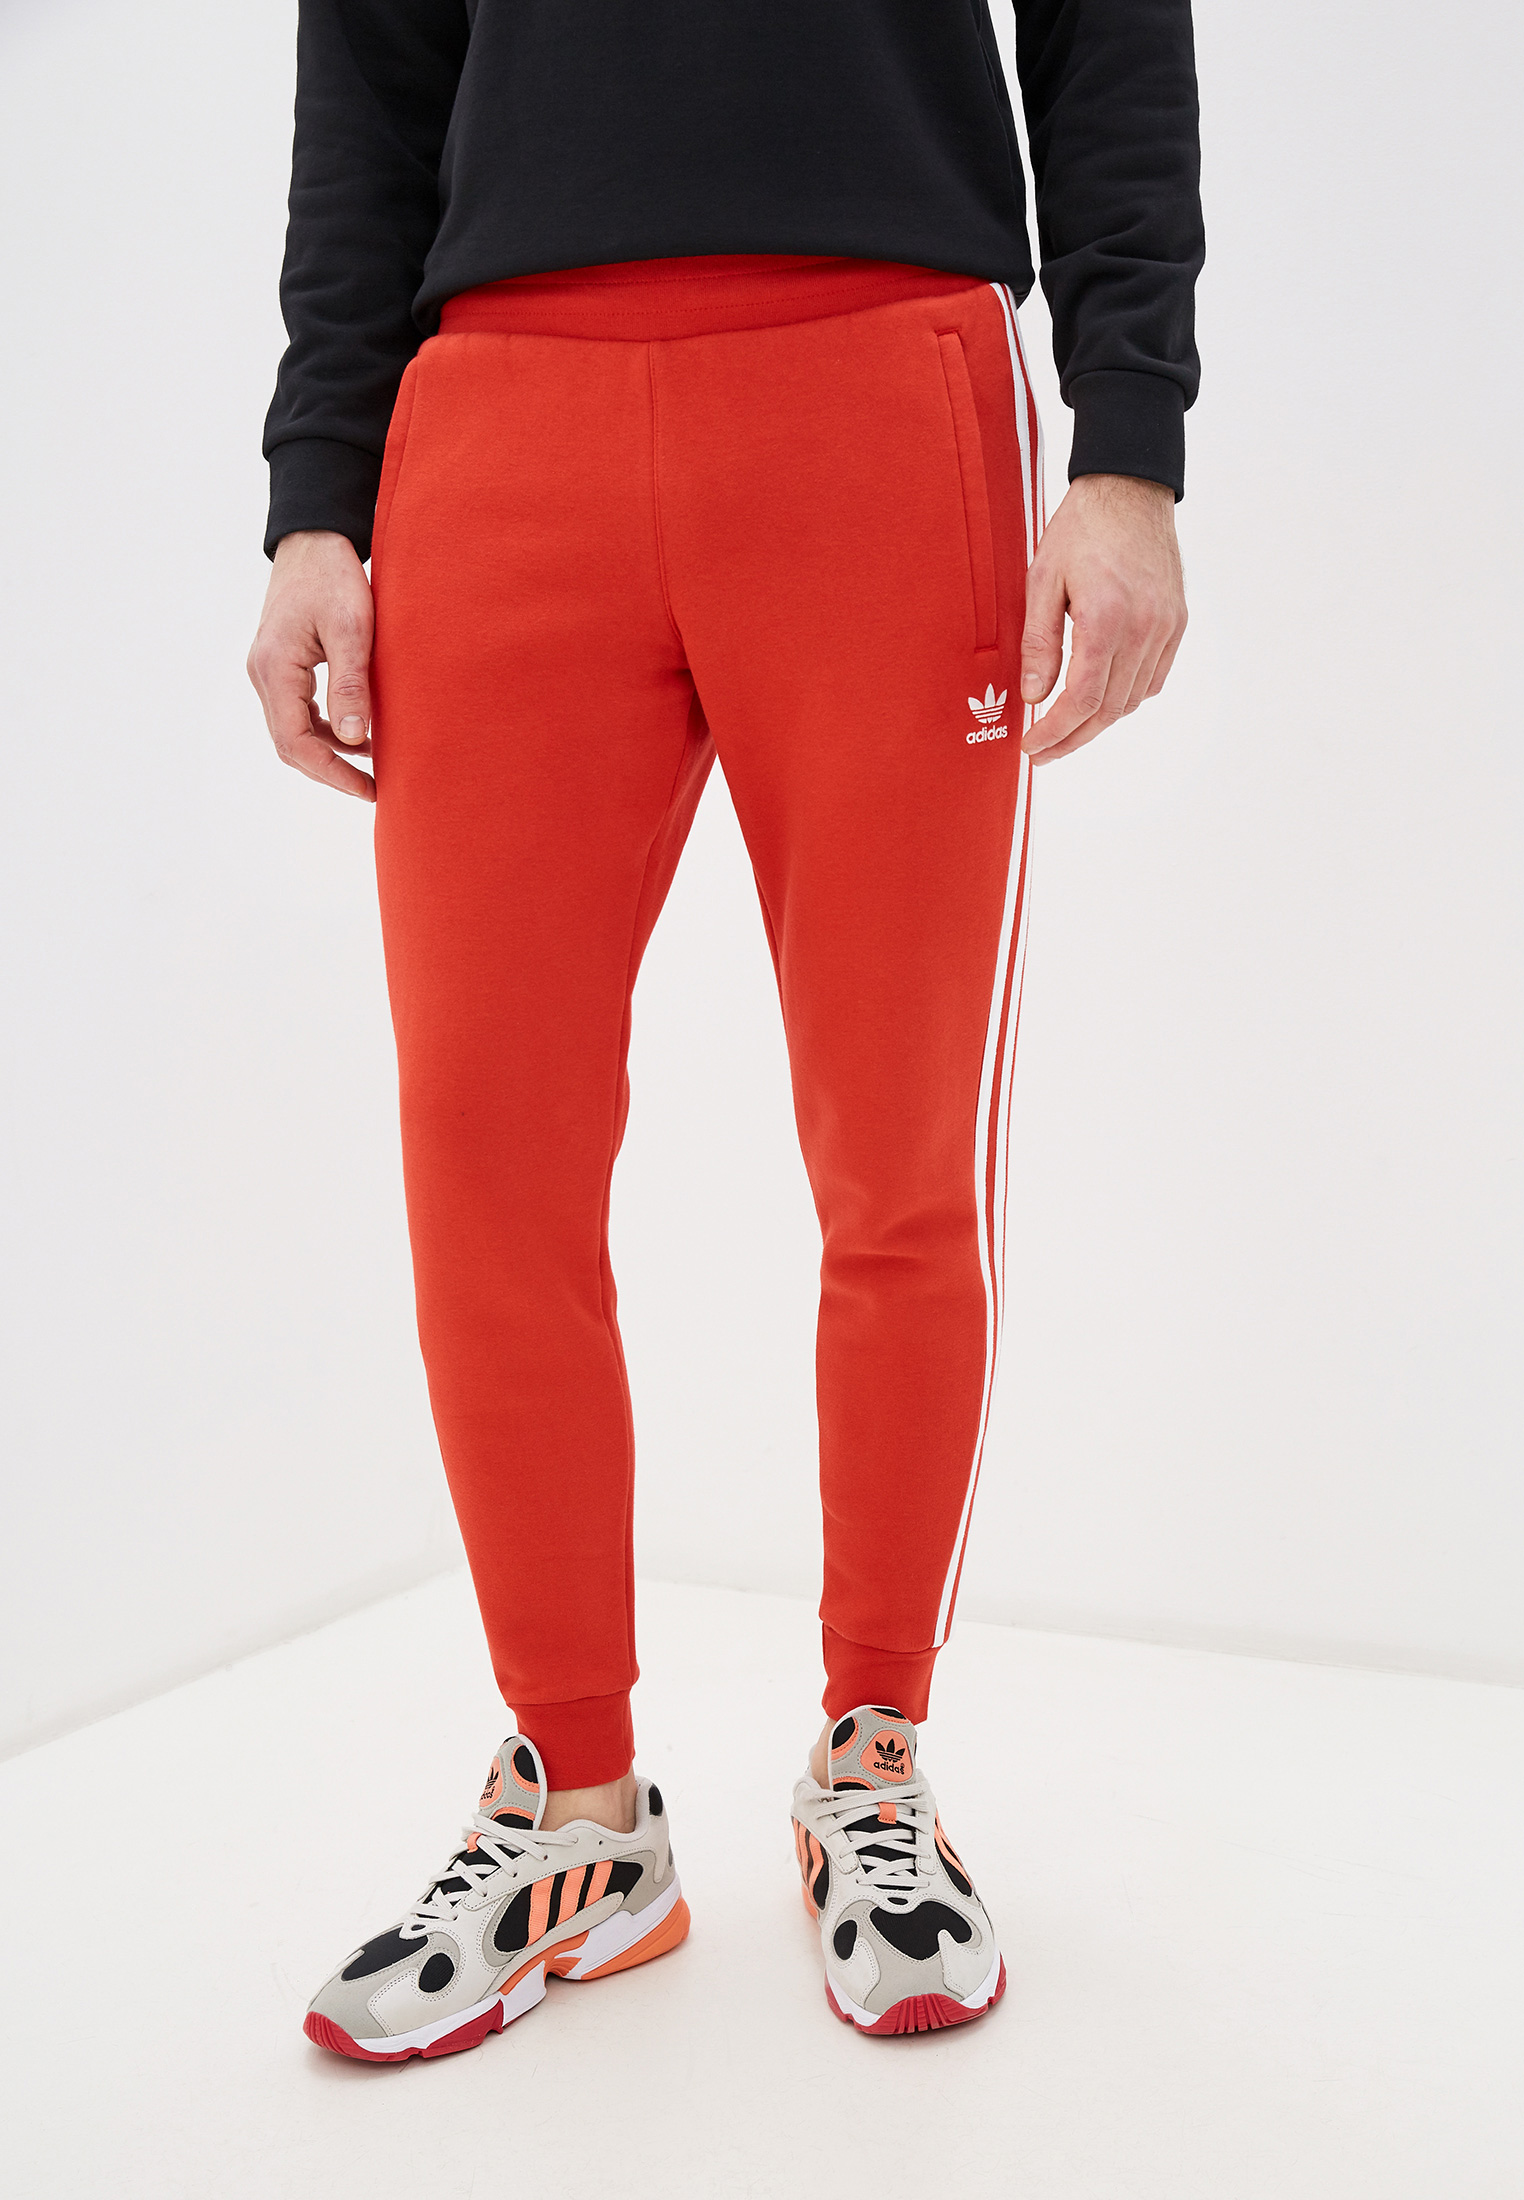 Красные штаны адидас. Брюки спортивные adidas Originals fm9896. Красные штаны адидас ориджинал. Штаны адидас Ориджиналс красные мужские. Adidas Originals красные брюки Cotton.